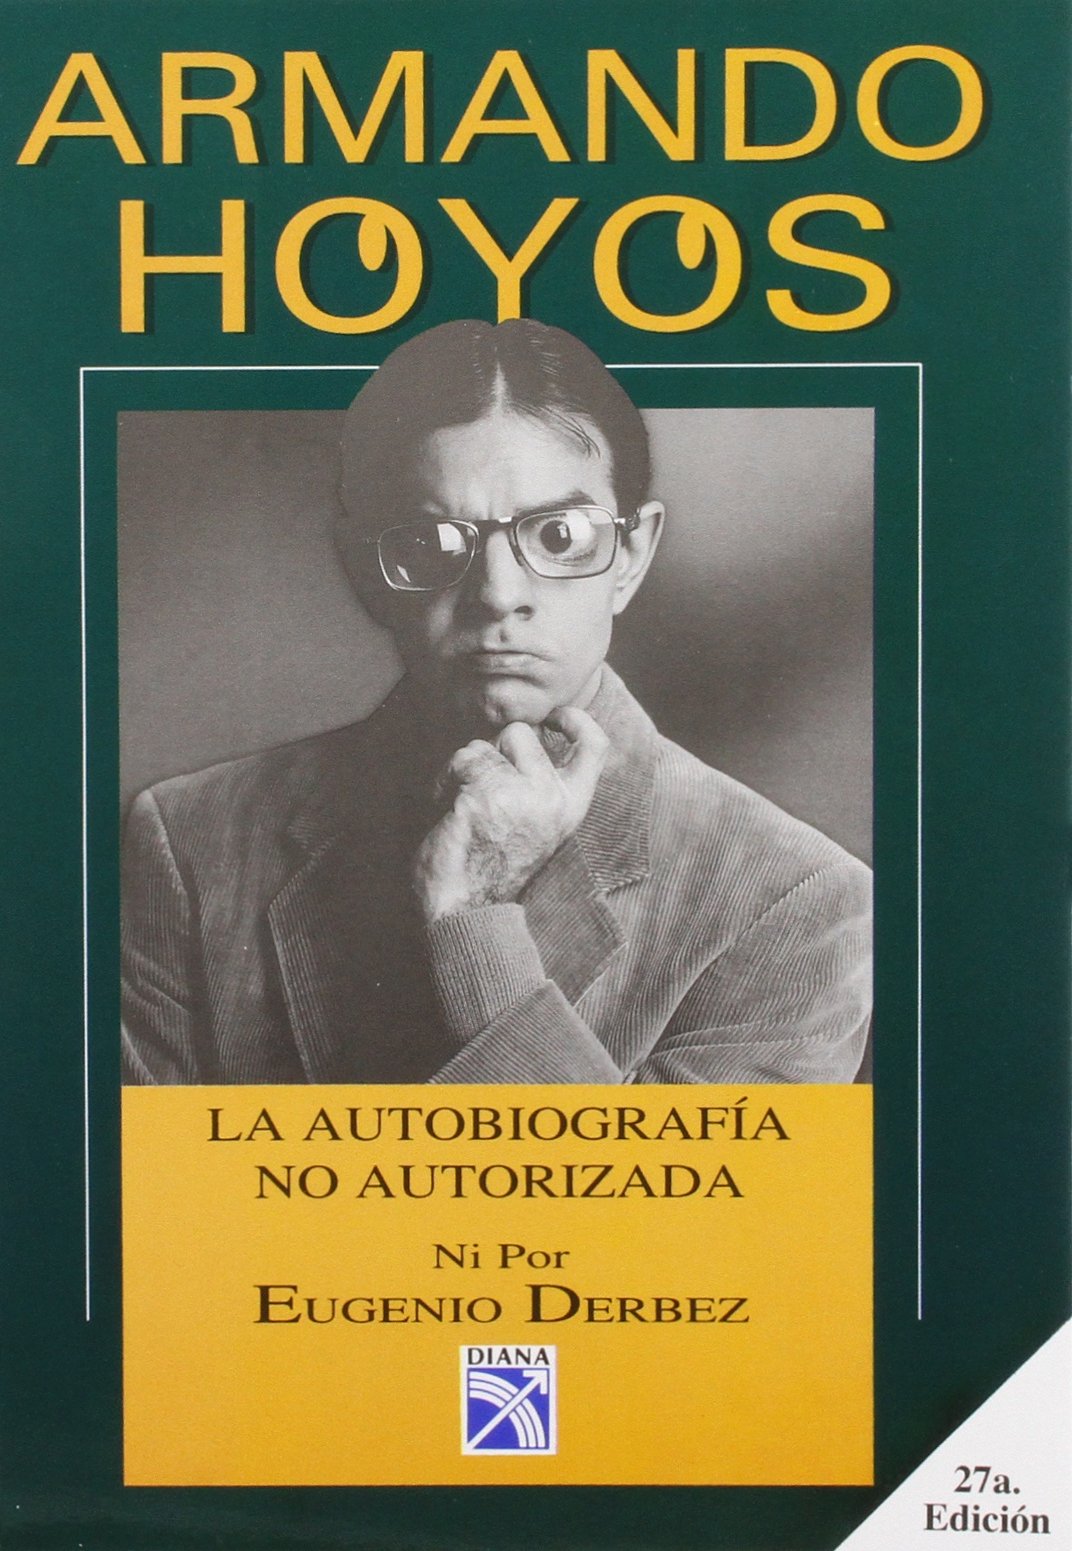 Armando Hoyos